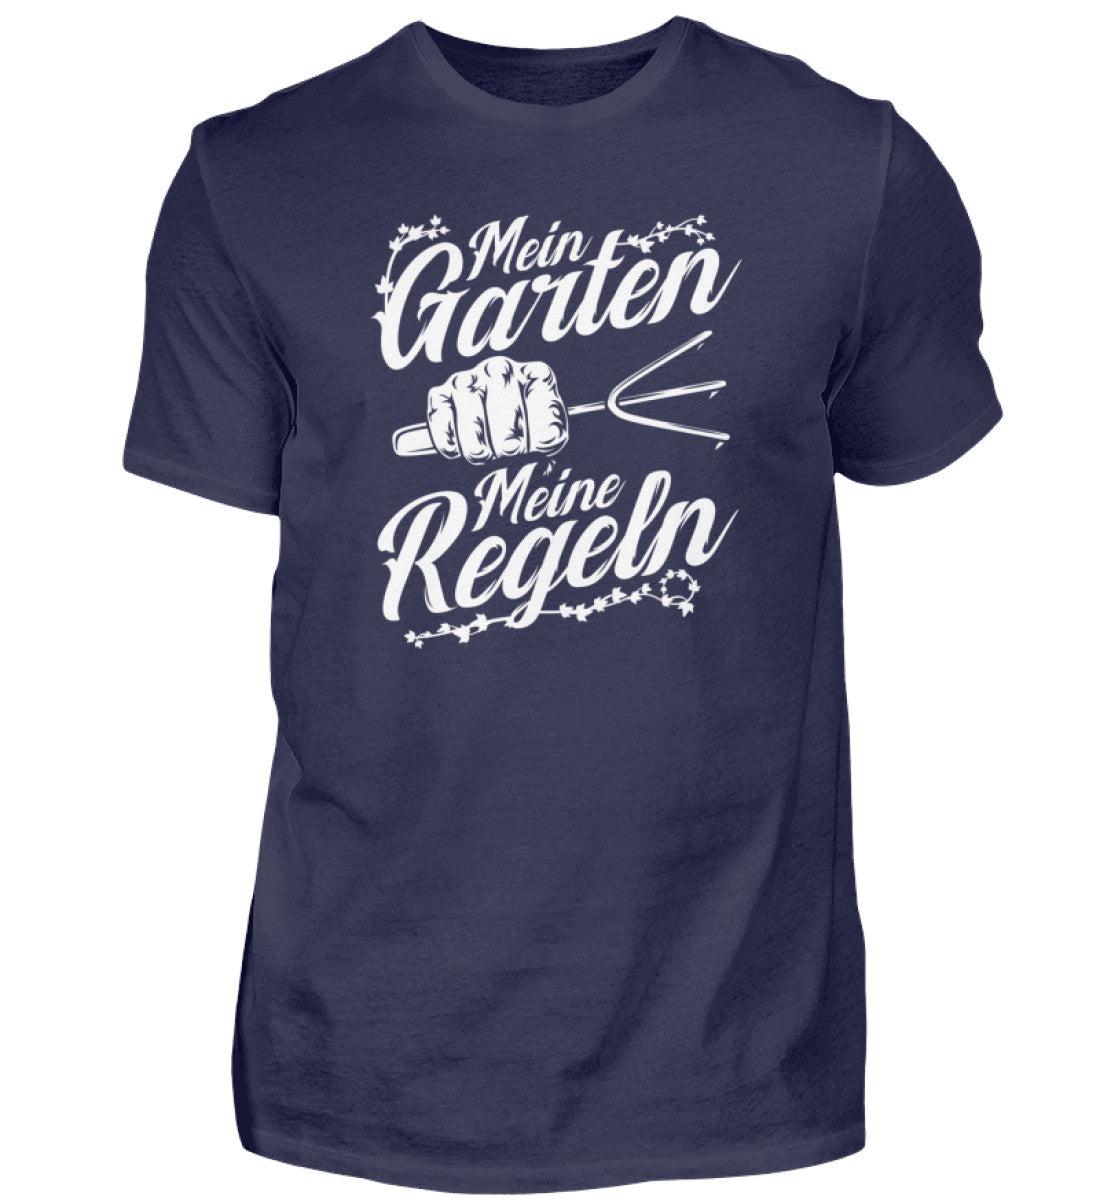 Mein Garten meine Regeln · Herren T-Shirt-Herren Basic T-Shirt-Navy-S-Agrarstarz